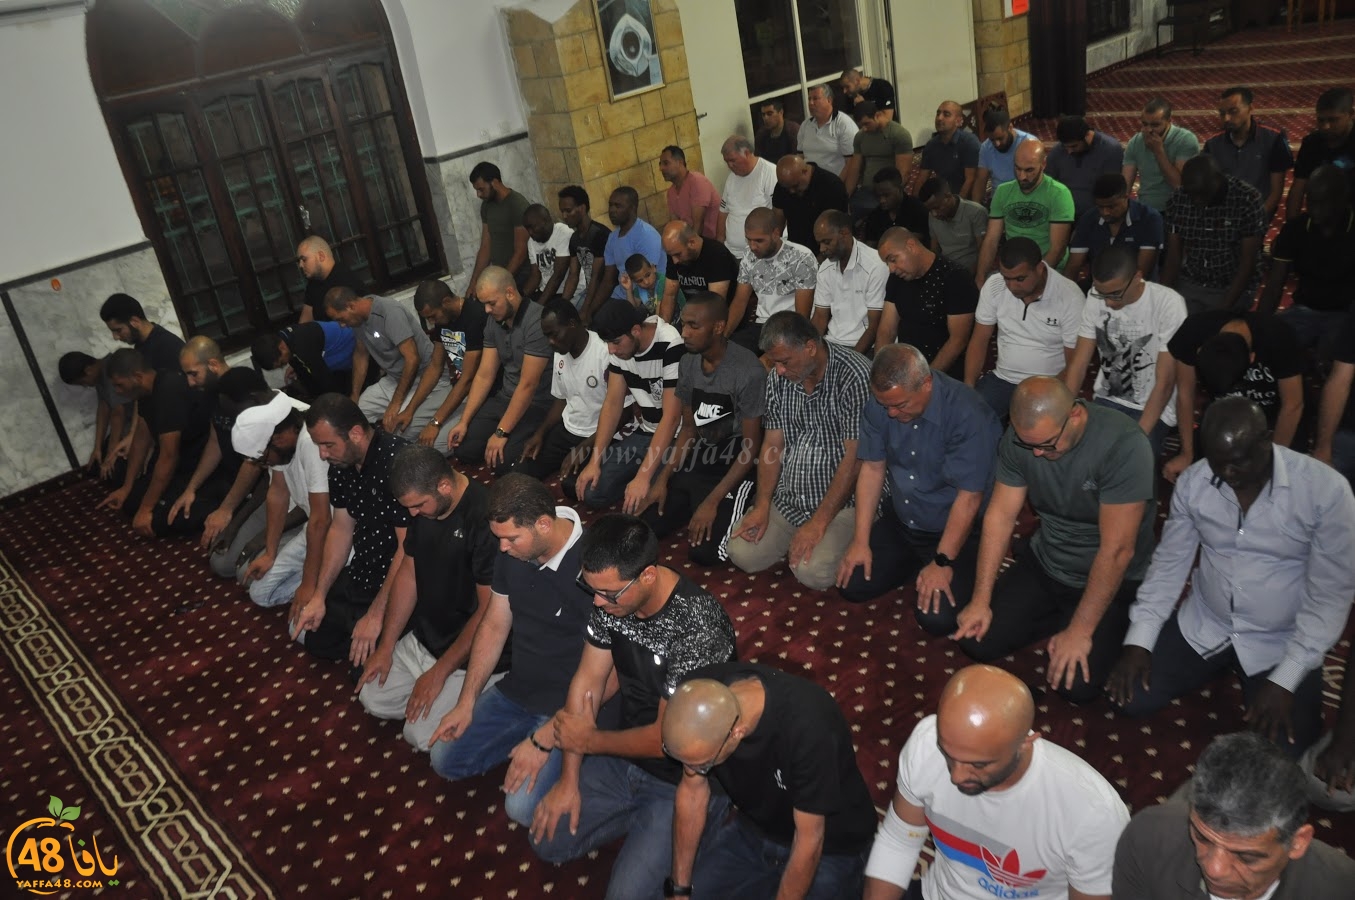  بالصور: شعائر صلاتي العشاء والتراويح في مسجد حسن بك بمدينة يافا 